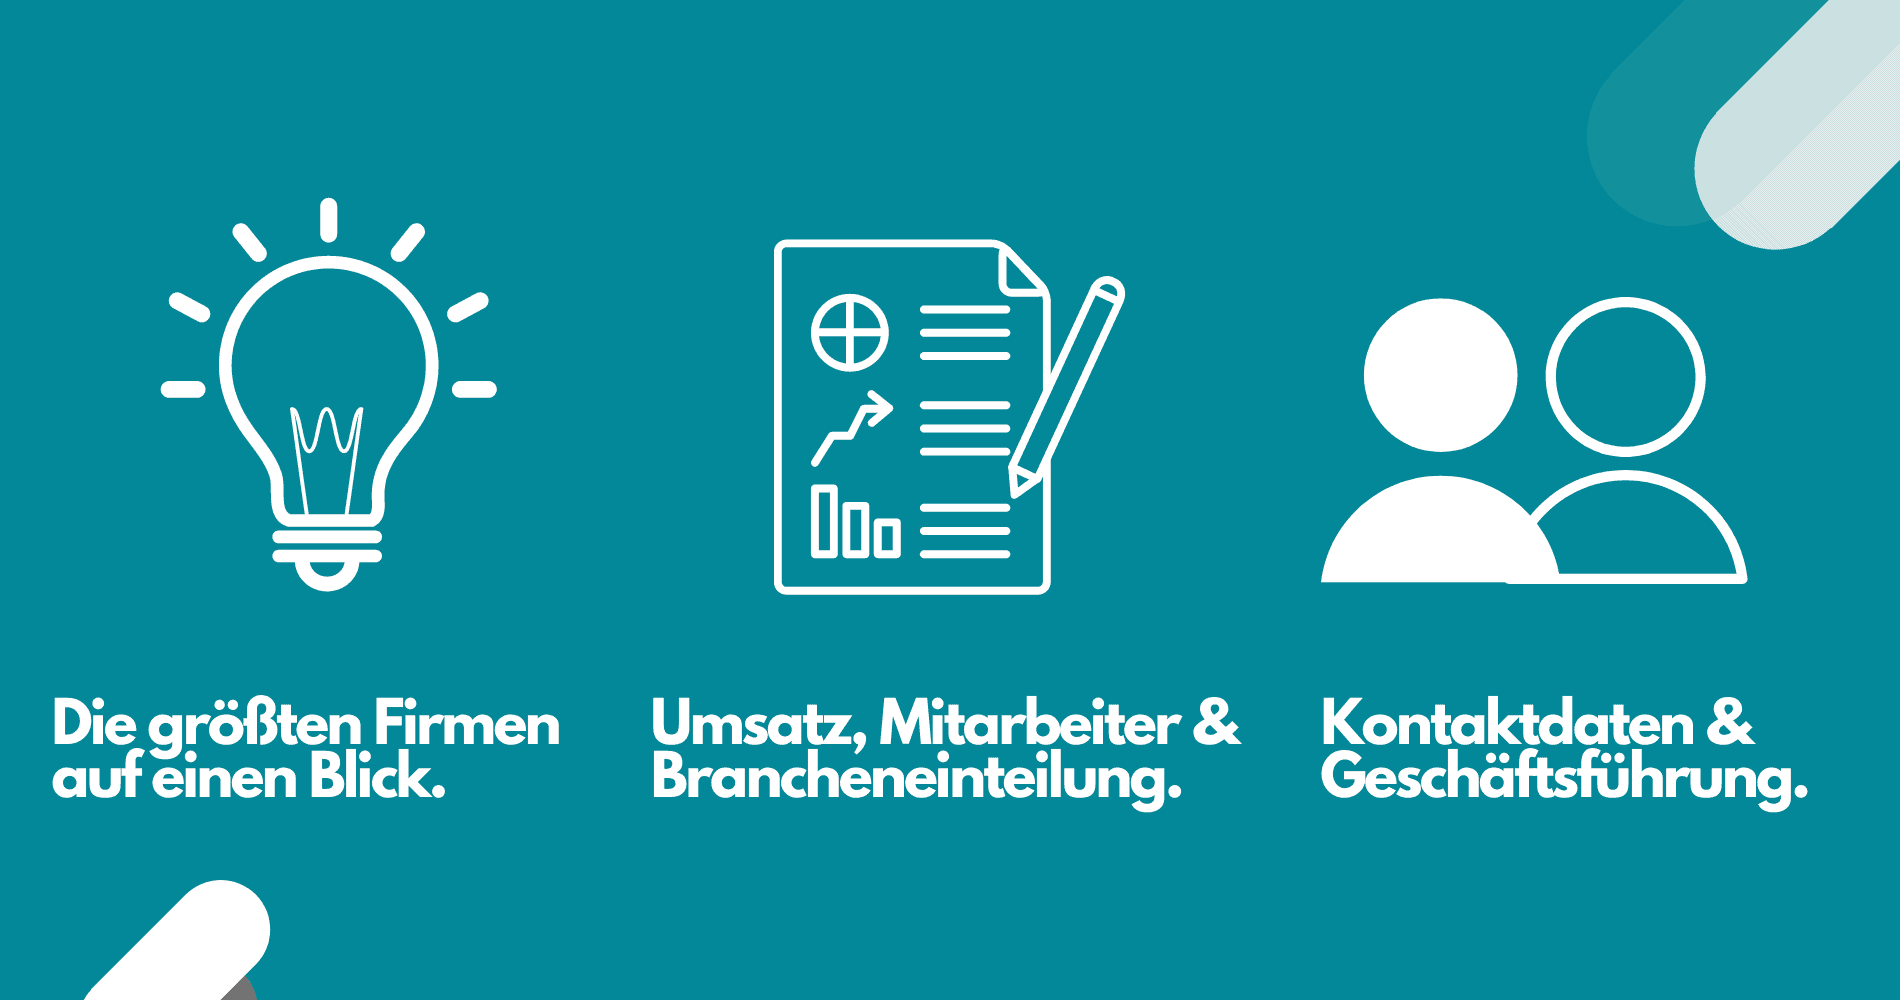 Bayern Kennzahlen, Umsatz, Mitarbeiter